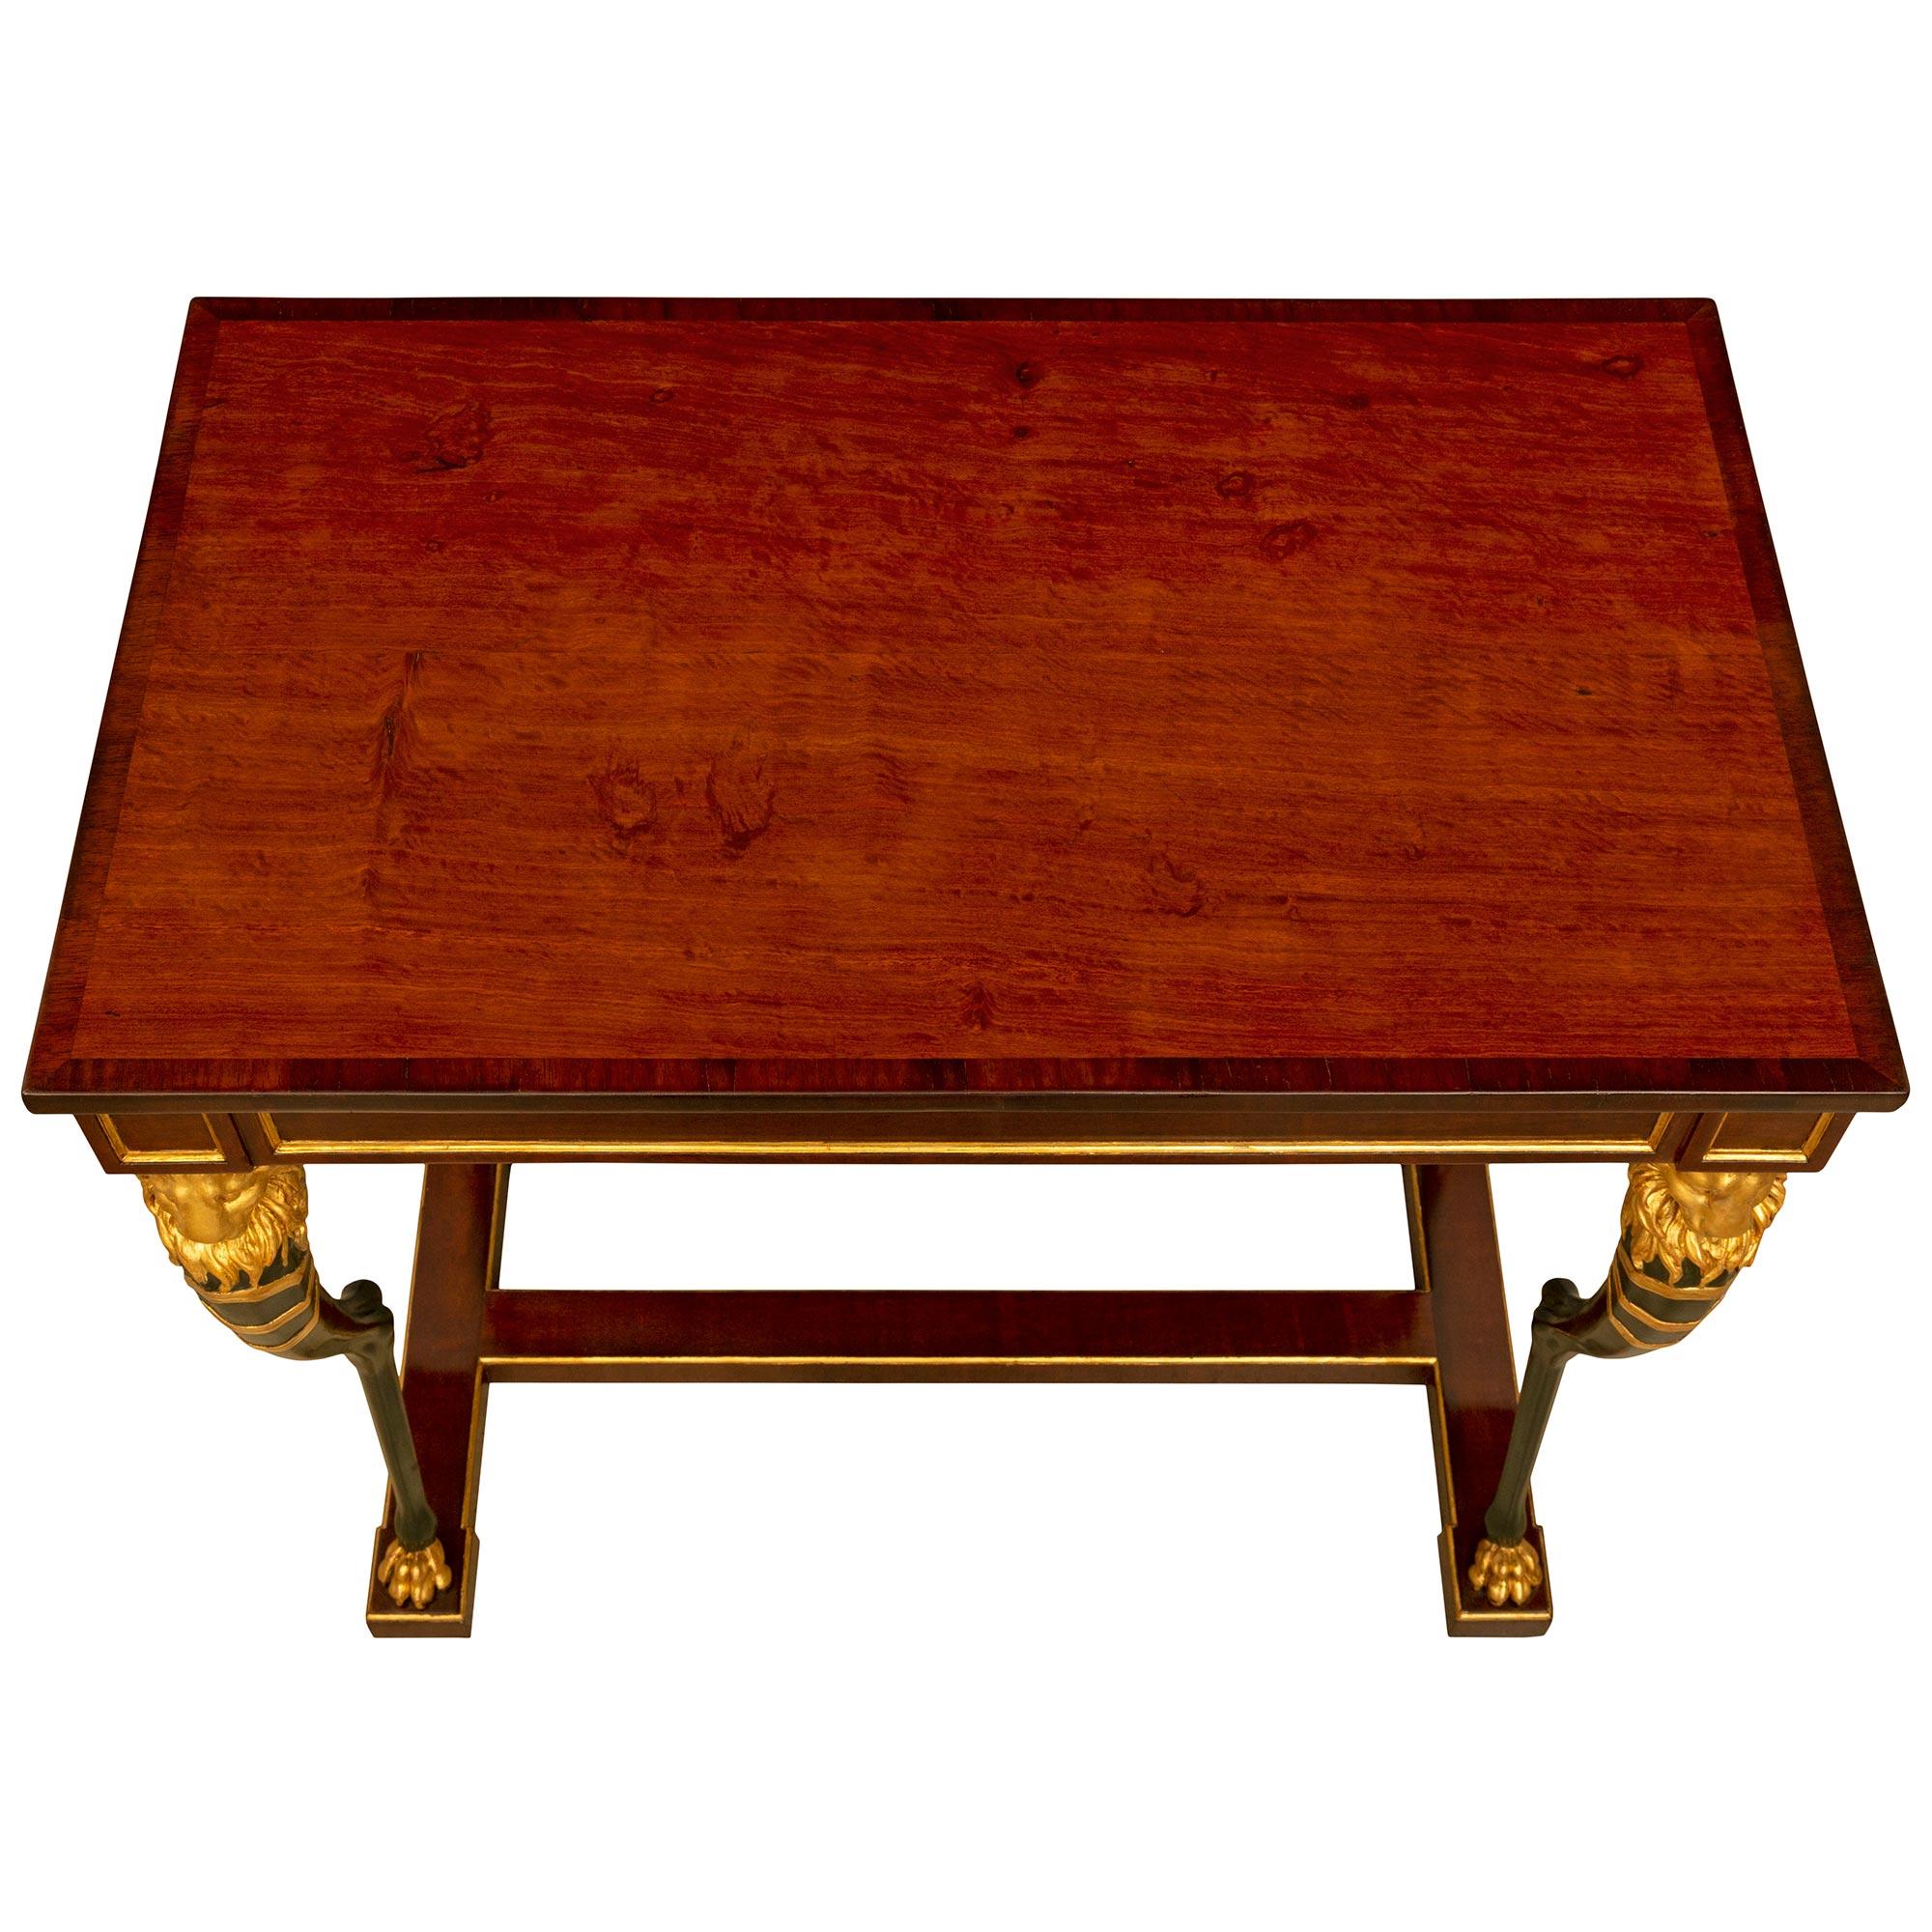 Ein bemerkenswerter und sehr eleganter schwedischer Empire-Tisch aus dem 19. Jahrhundert aus Mahagoni, Polychromie und Goldholz. Der rechteckige Tisch wird von einer eleganten H-förmigen unteren Mahagoni-Ladefläche mit einer feinen gesprenkelten